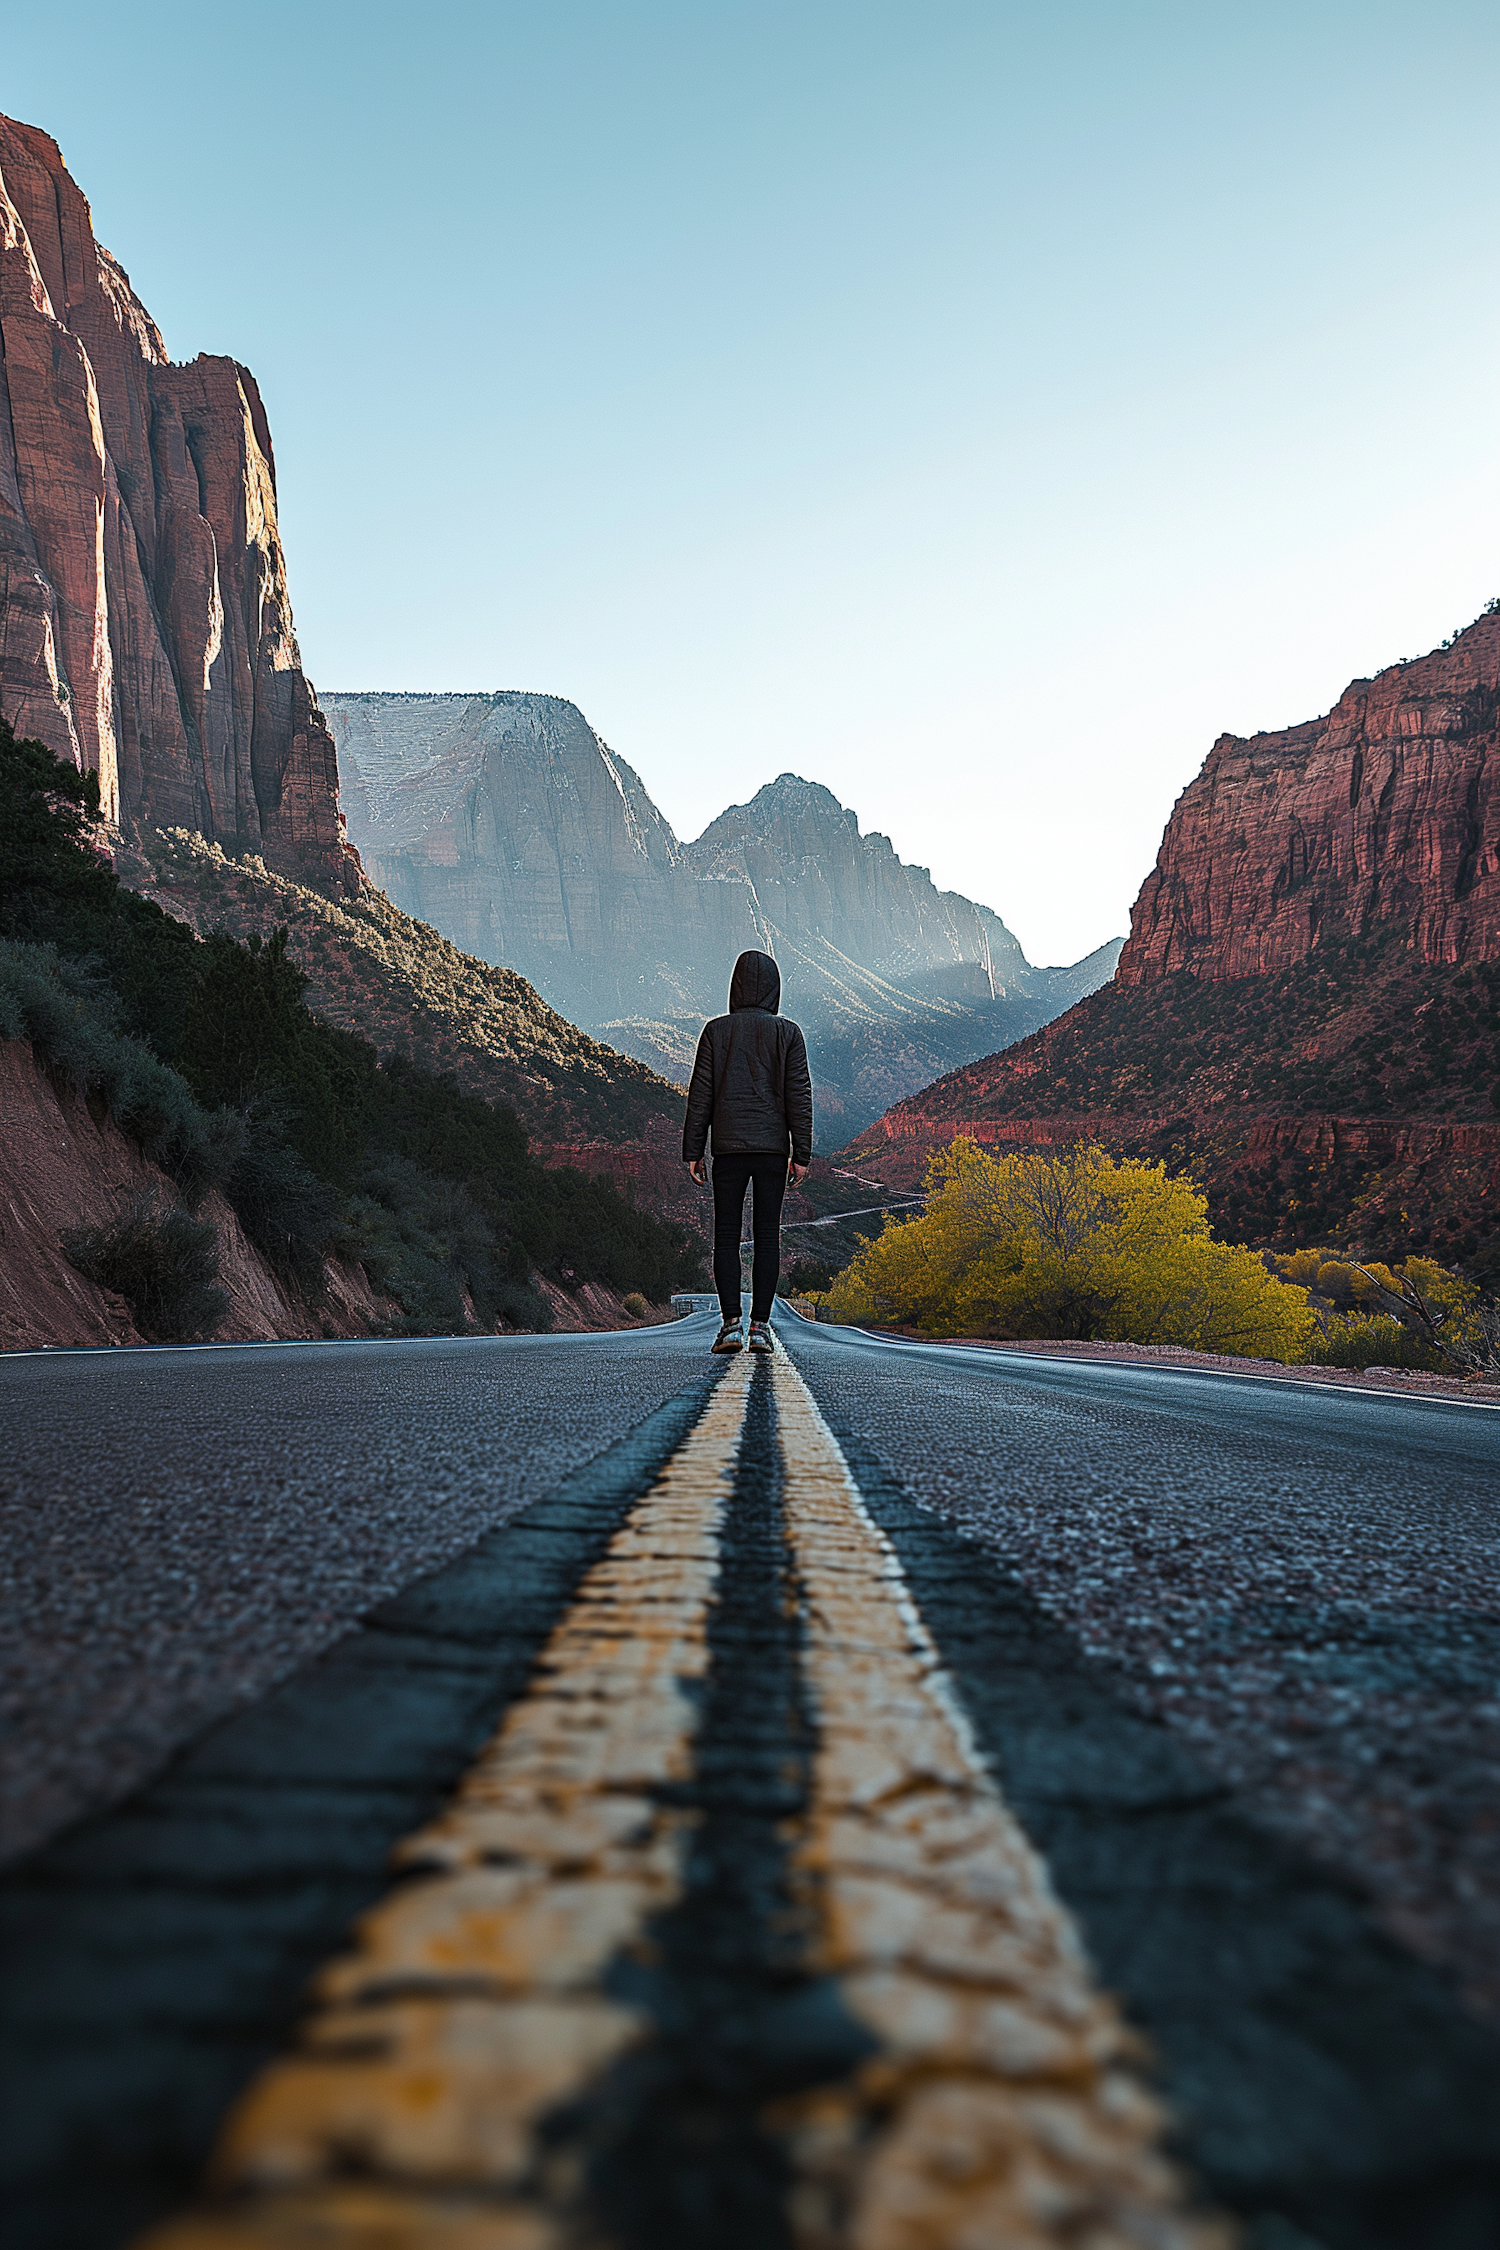 Solitary Traveler on a Desert Road at Twilight